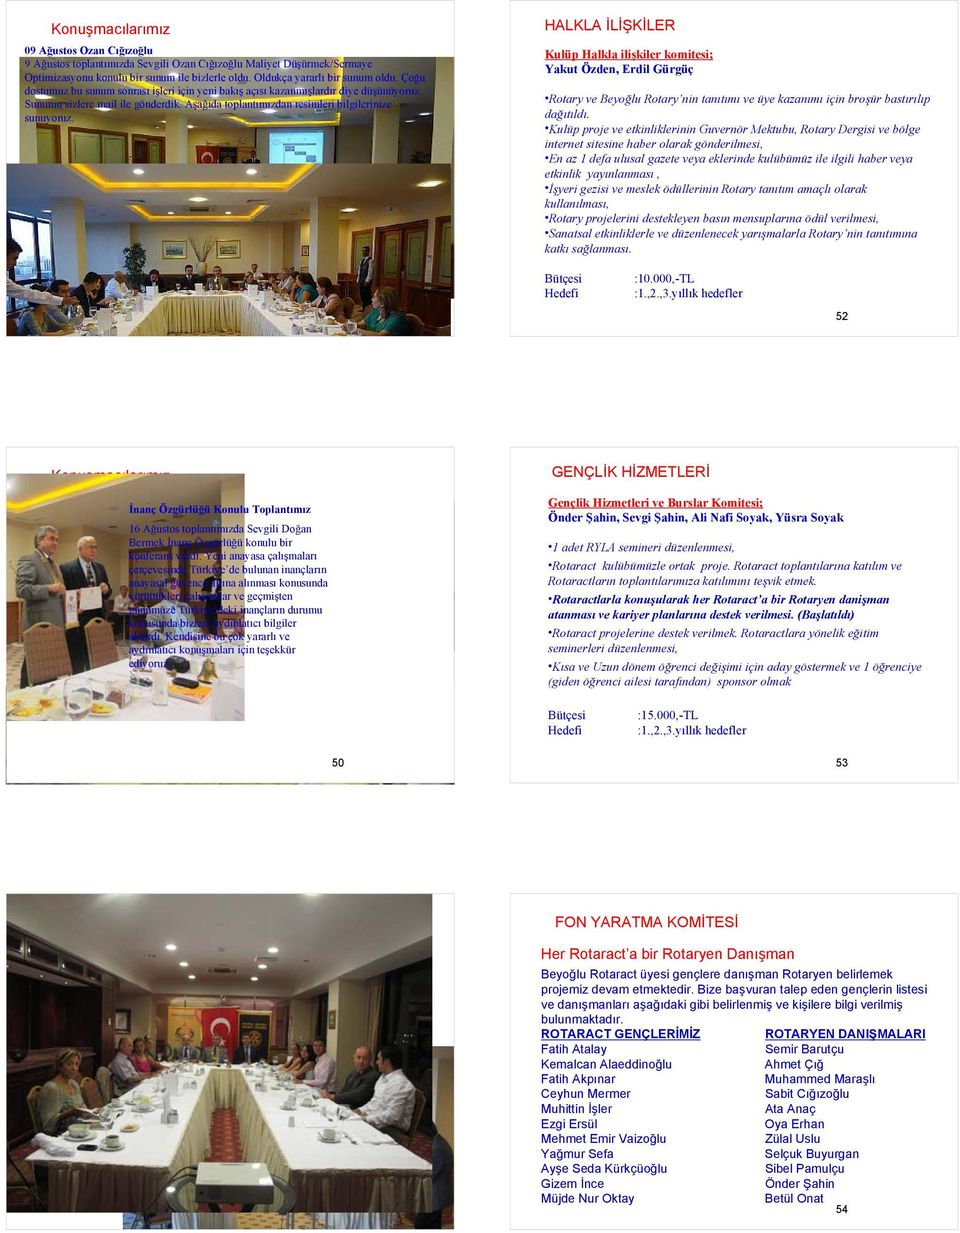 HALKLA İLİŞKİLER Kulüp Halkla ilişkiler komitesi; Yakut Özden, Erdil Gürgüç Rotary ve Beyoğlu Rotary nin tanıtımı ve üye kazanımı için broşür bastırılıp dağıtıldı.